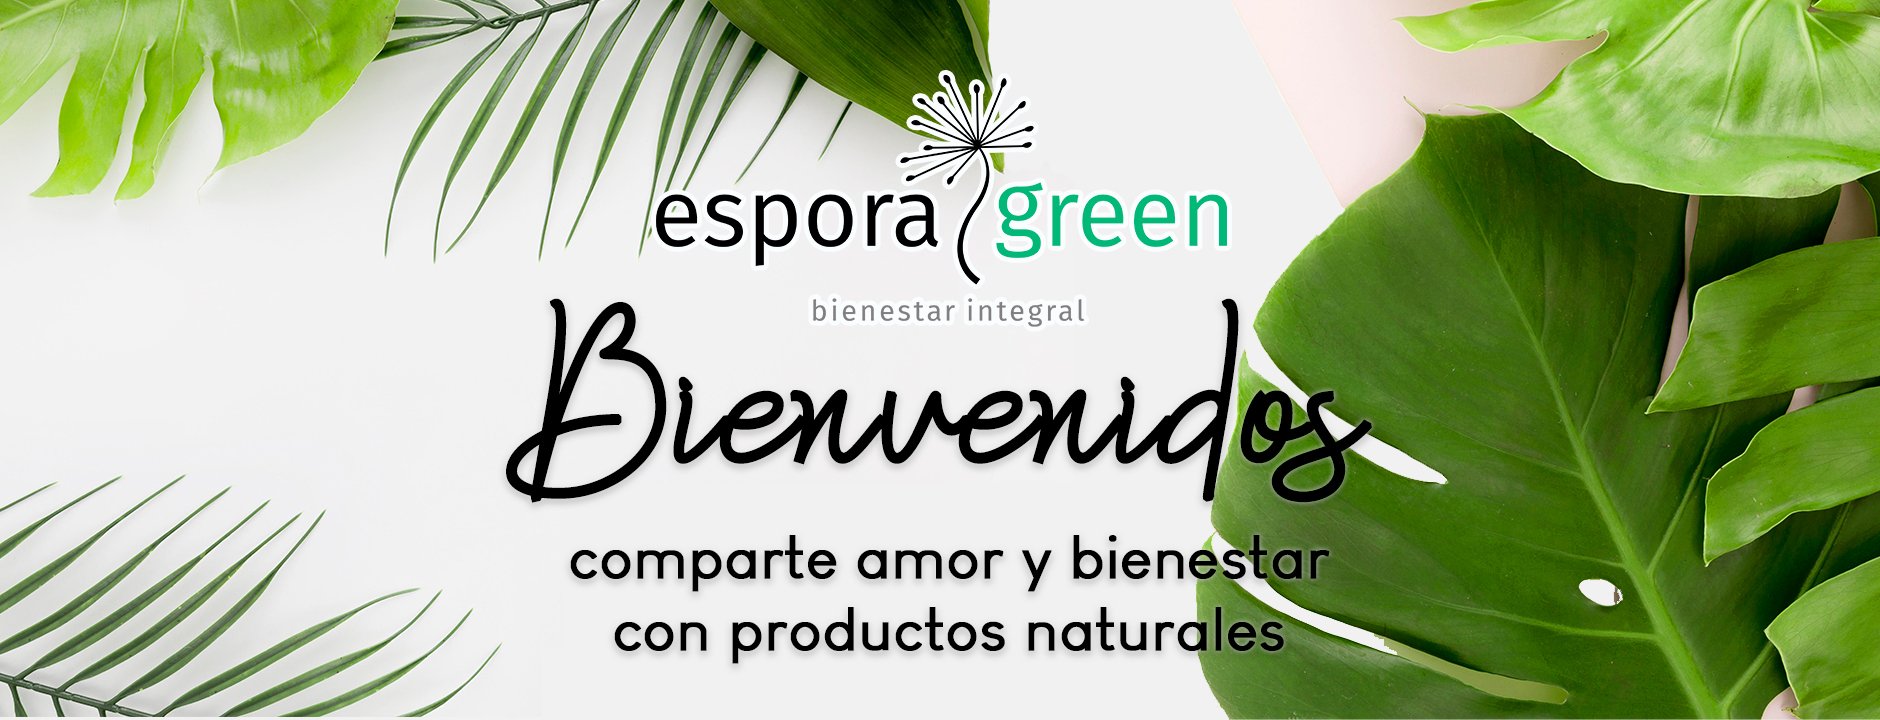 Espora Green Bienestar y productos naturales